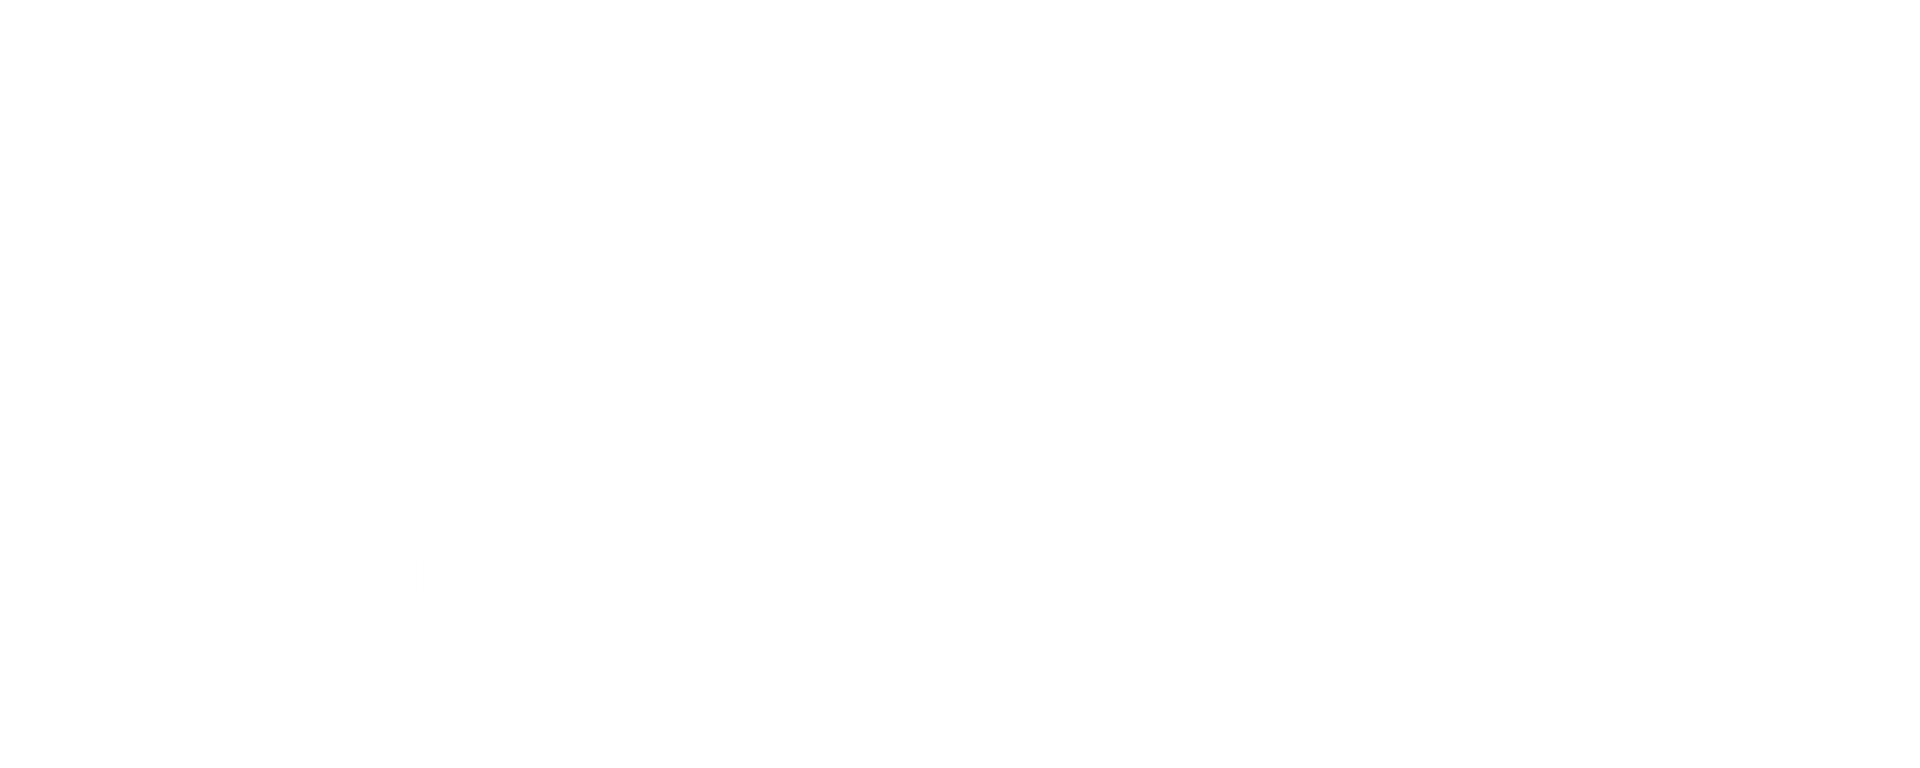 Best Loan Provider